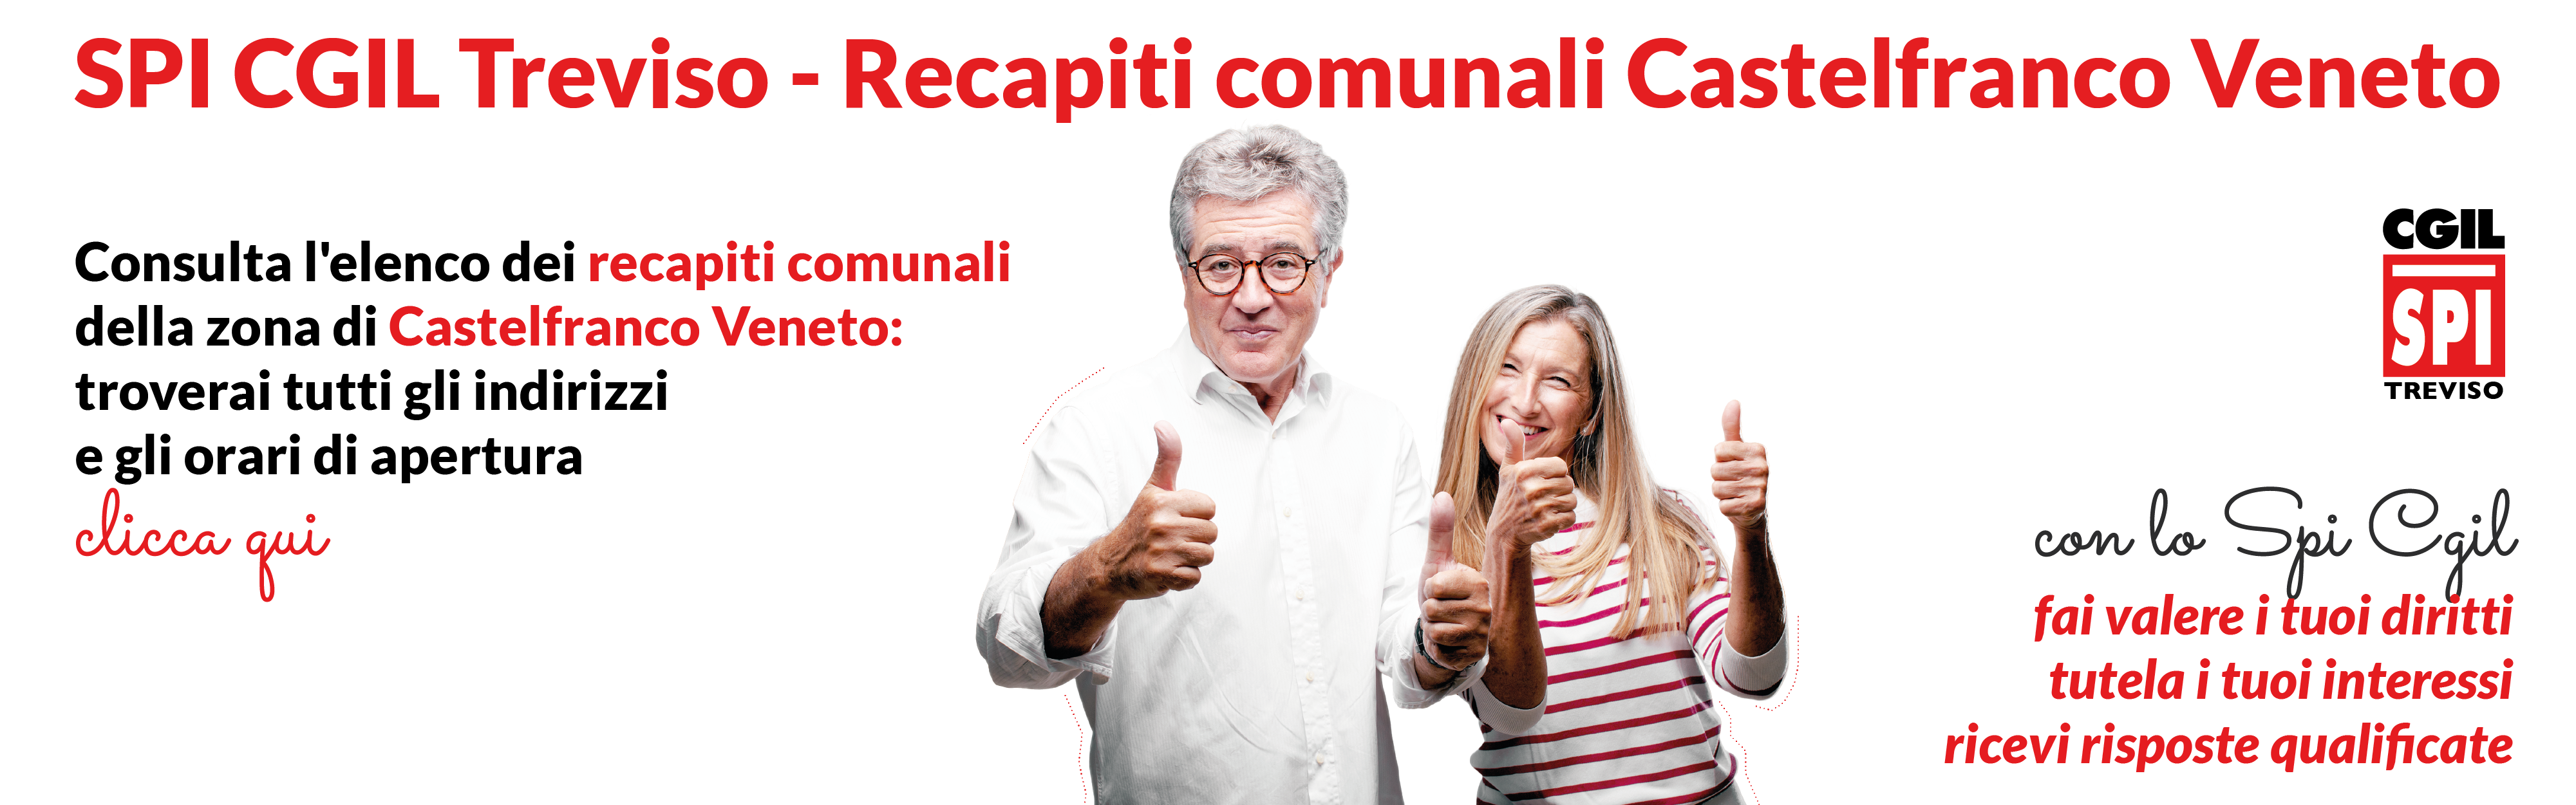 SPI CGIL TV-Recapiti Castelfranco veneto-banner